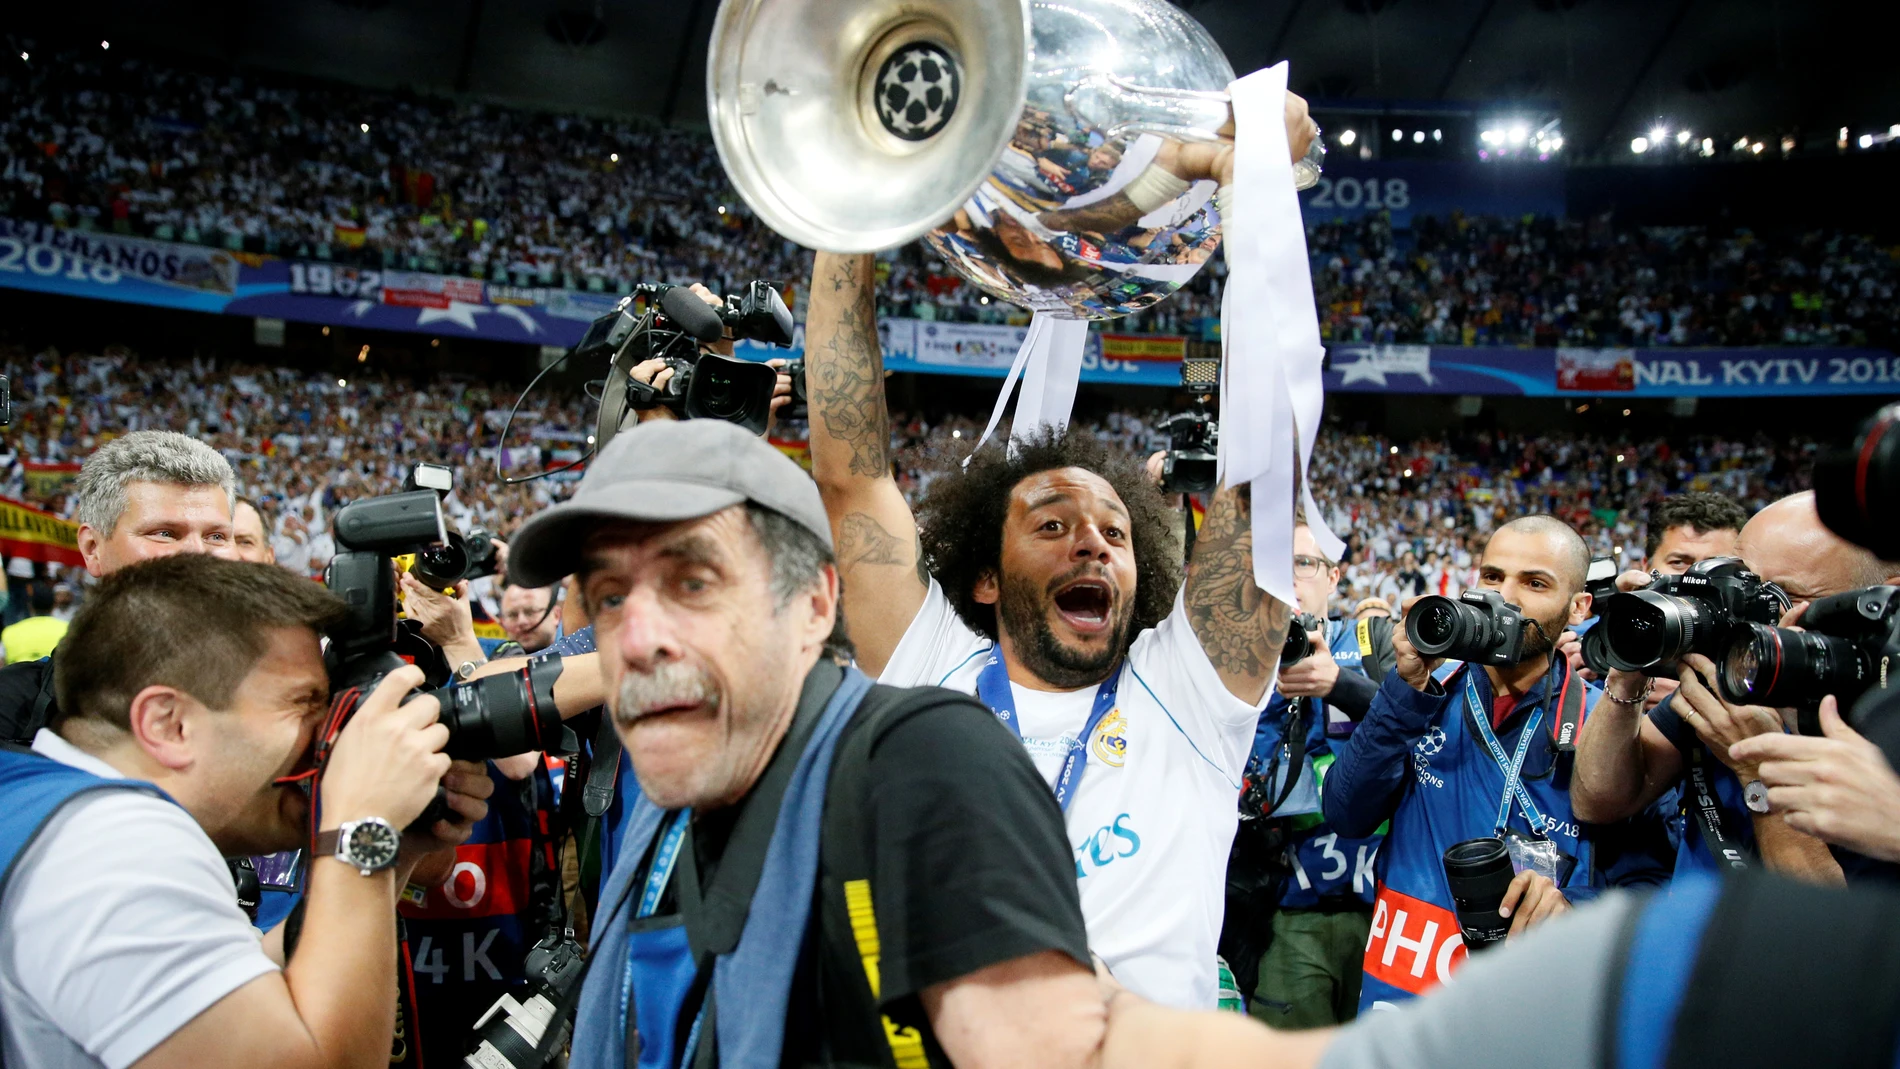 Marcelo levanta la Champions en Kiev